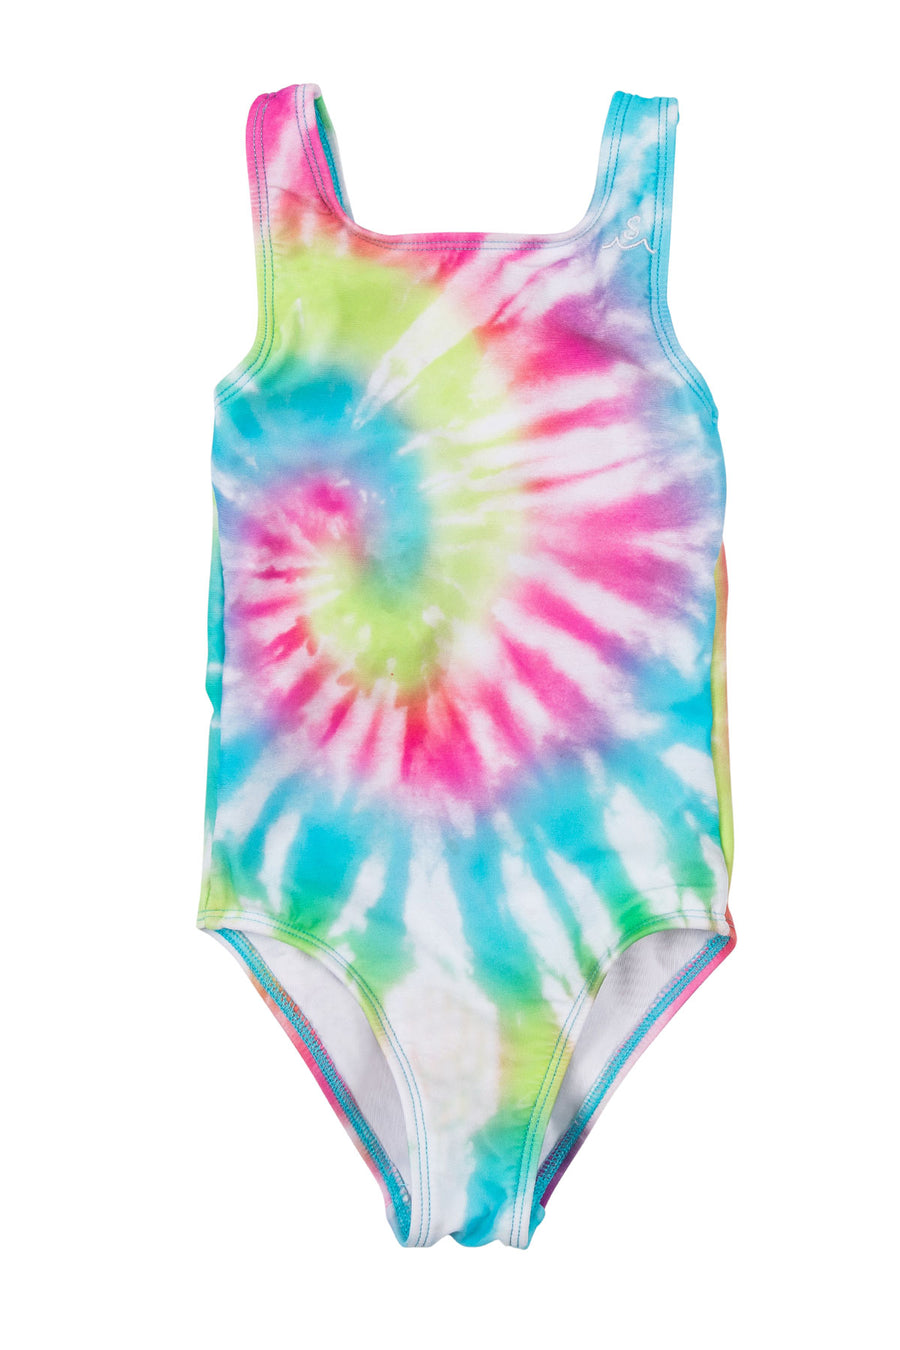 Sea Ripple / Neon Tie Dye /Swimsuit